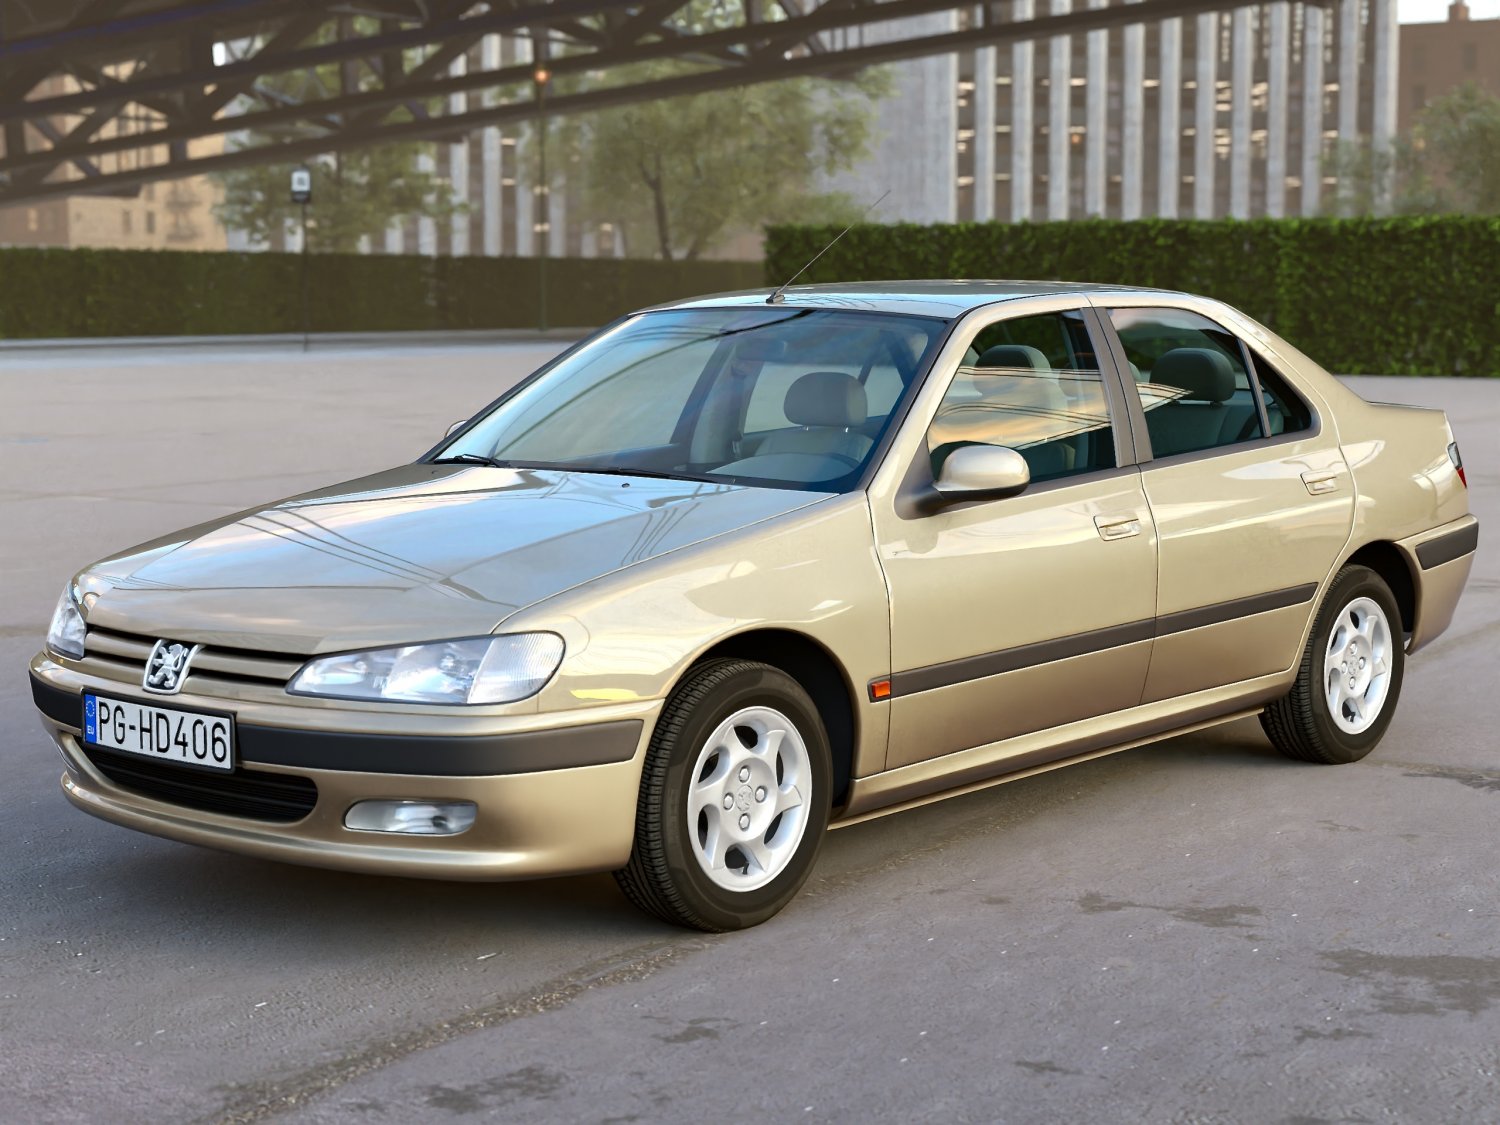 Peugeot 406 sedan 1995 3D Model $149 - .max .unknown .obj .ma .lwo .fbx  .c4d .3ds - Free3D